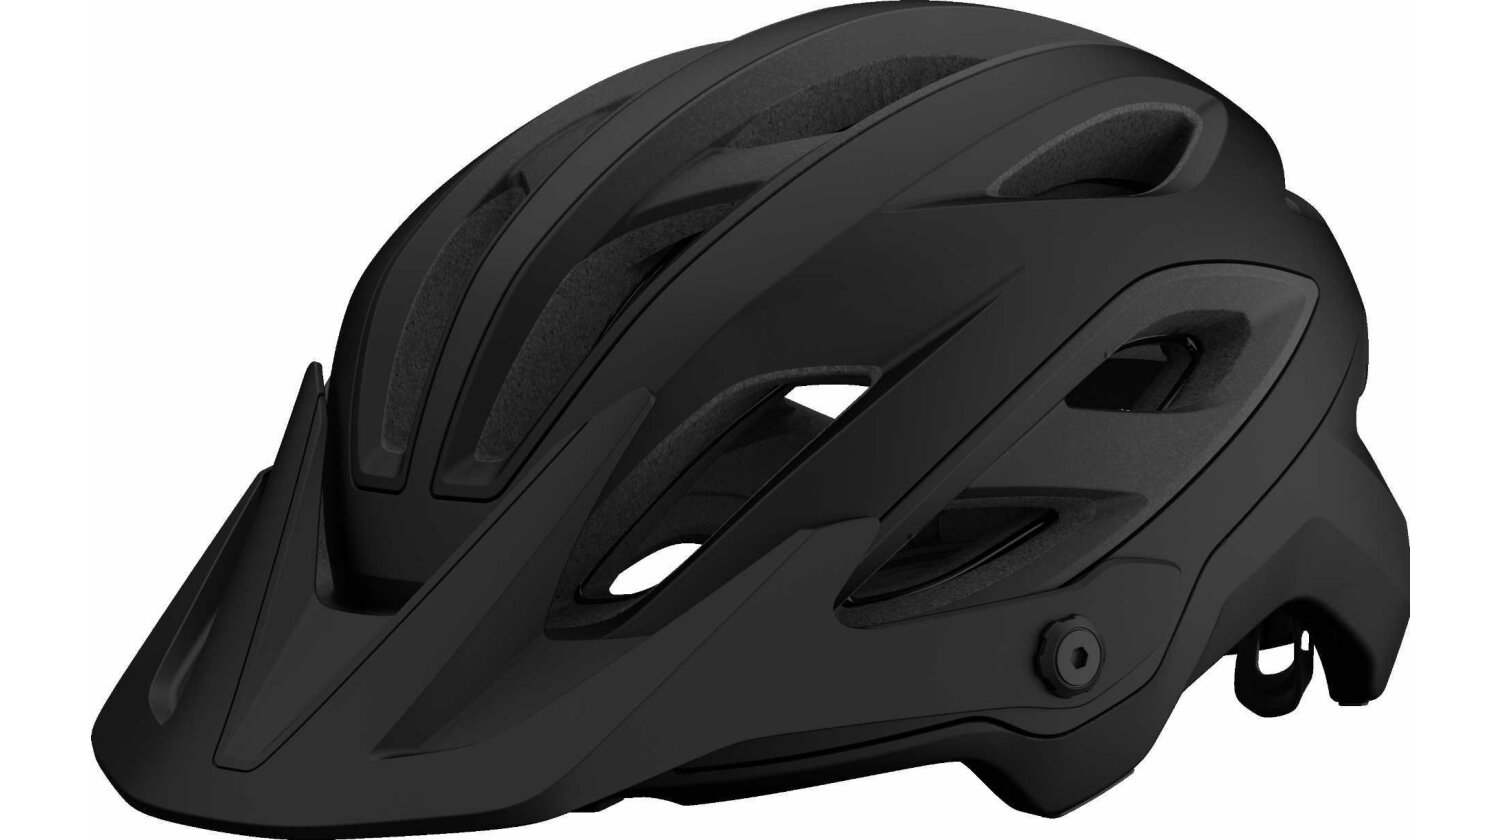 Giro Merit Spherical Mips MTB-Helm matte black/gloss black